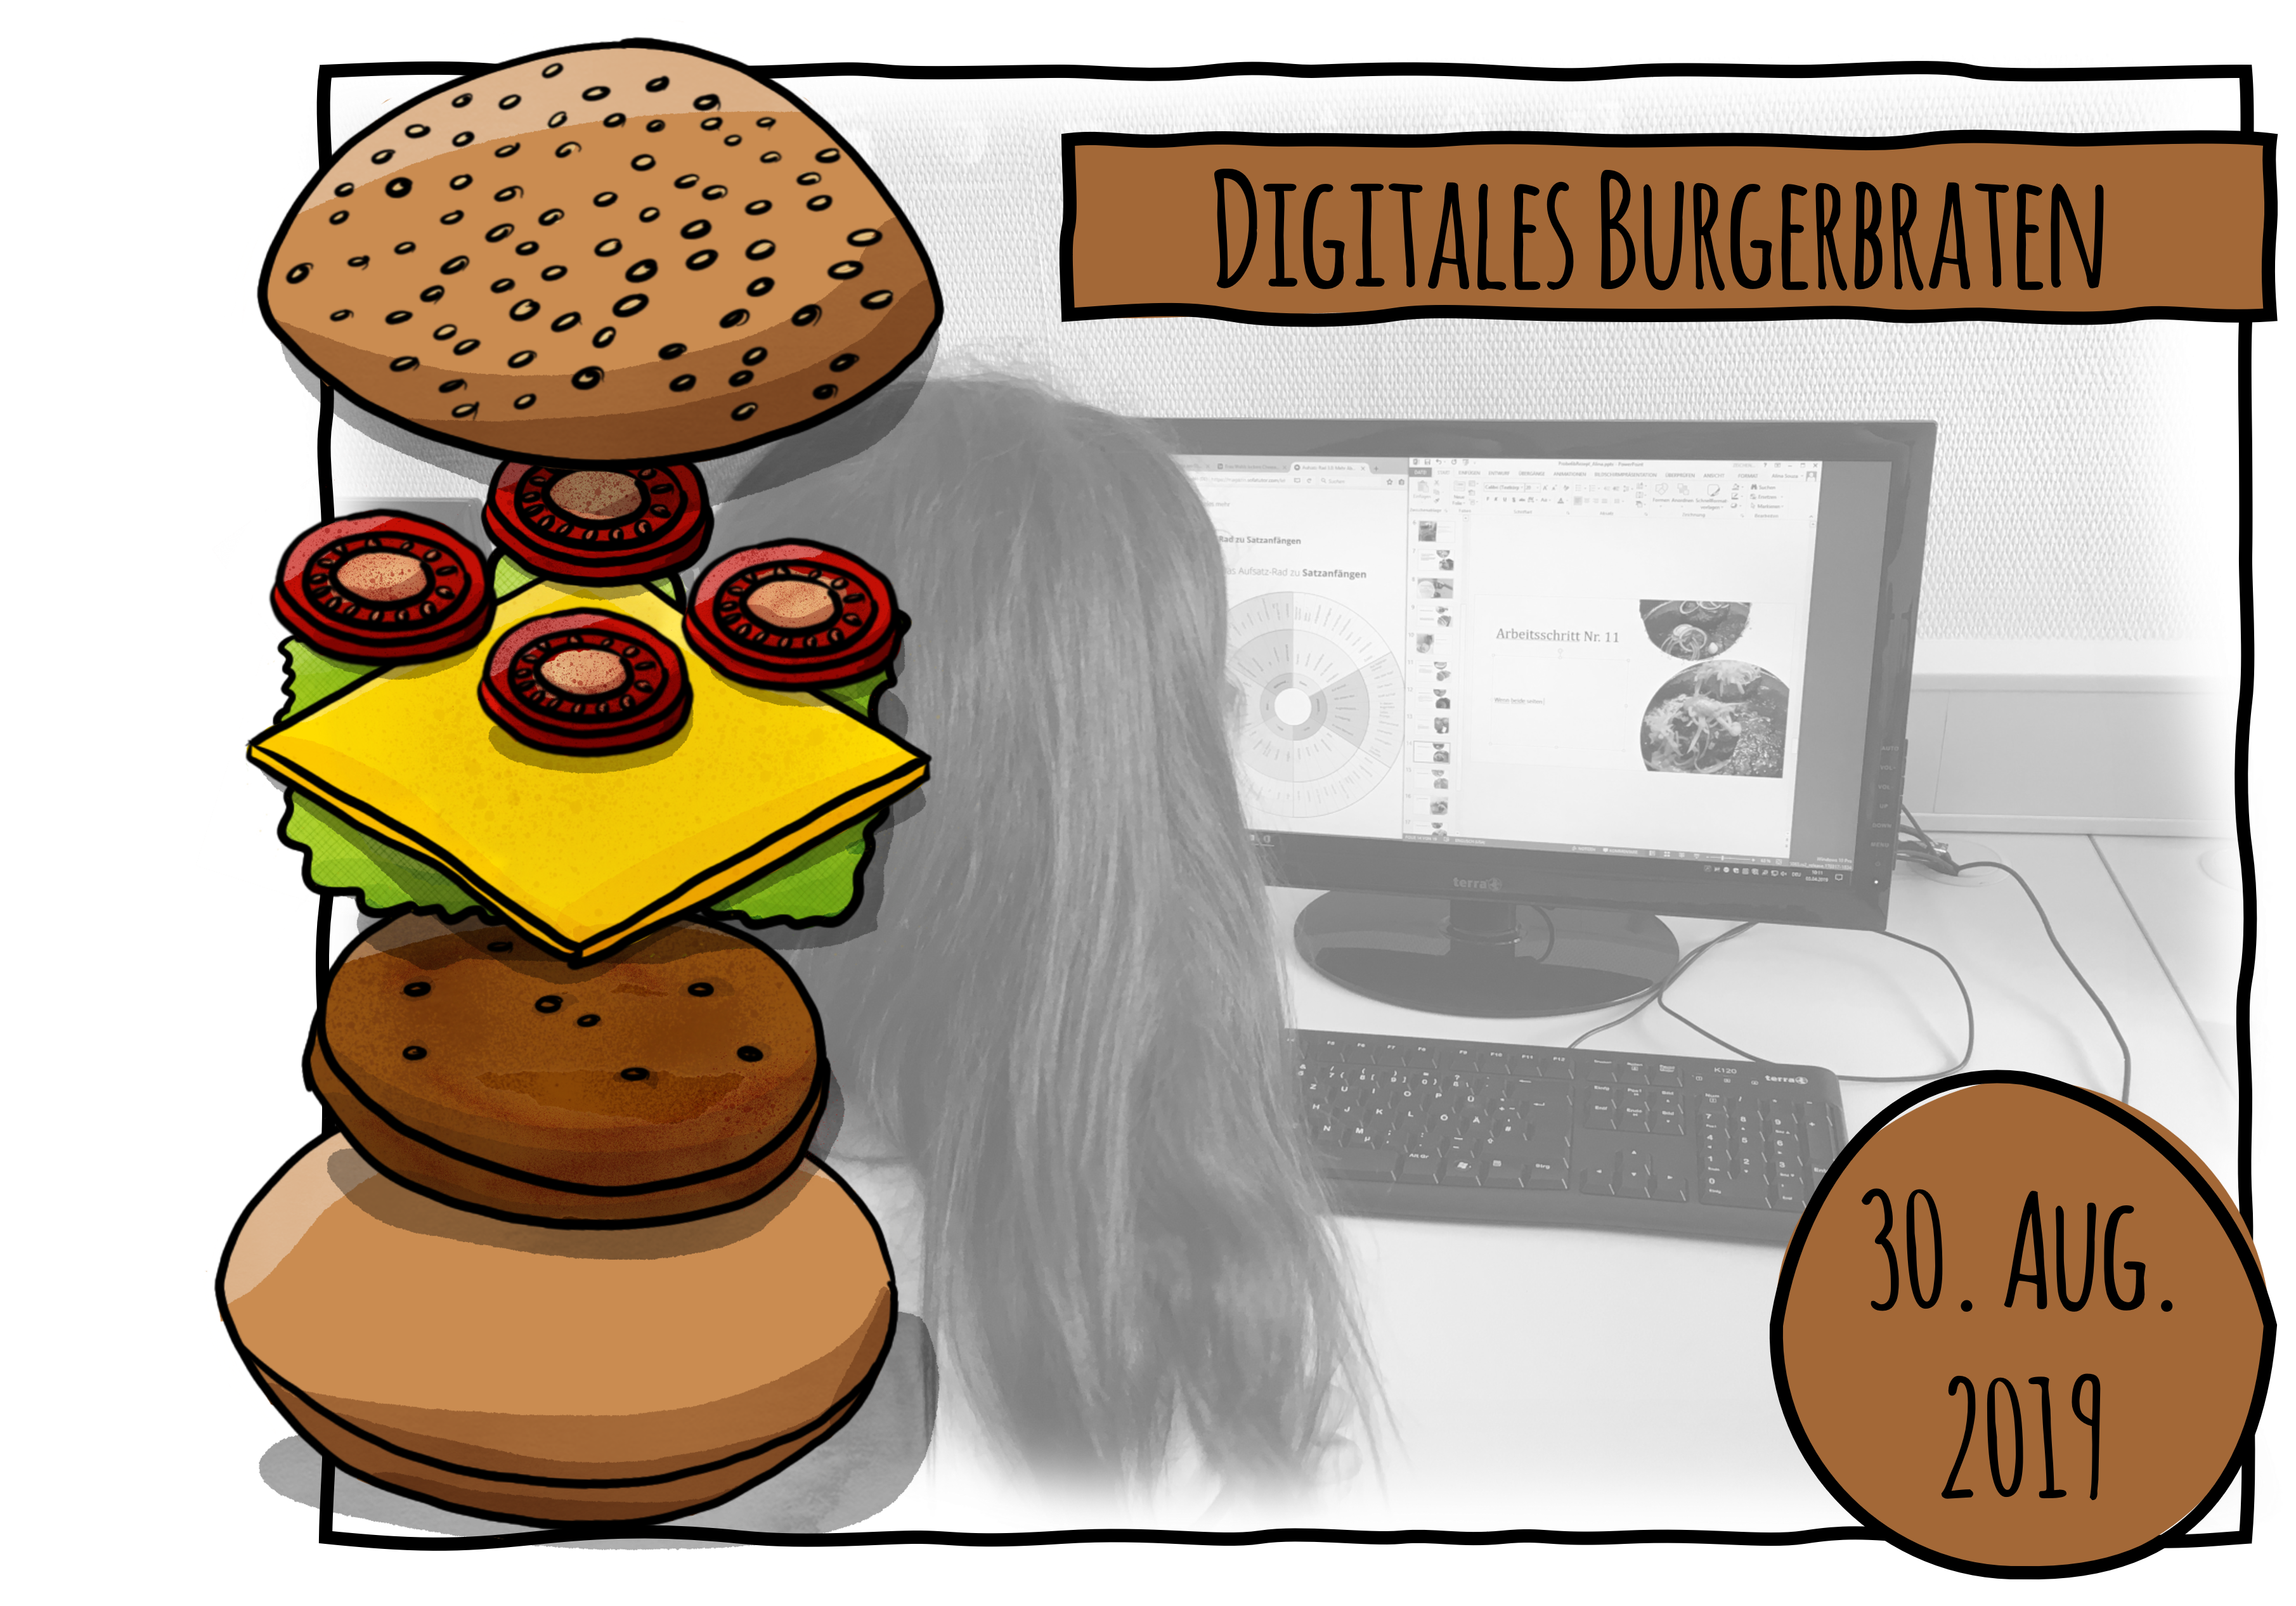 Digitales Burgerbraten – Die Vorgangsbeschreibung im Fach Deutsch